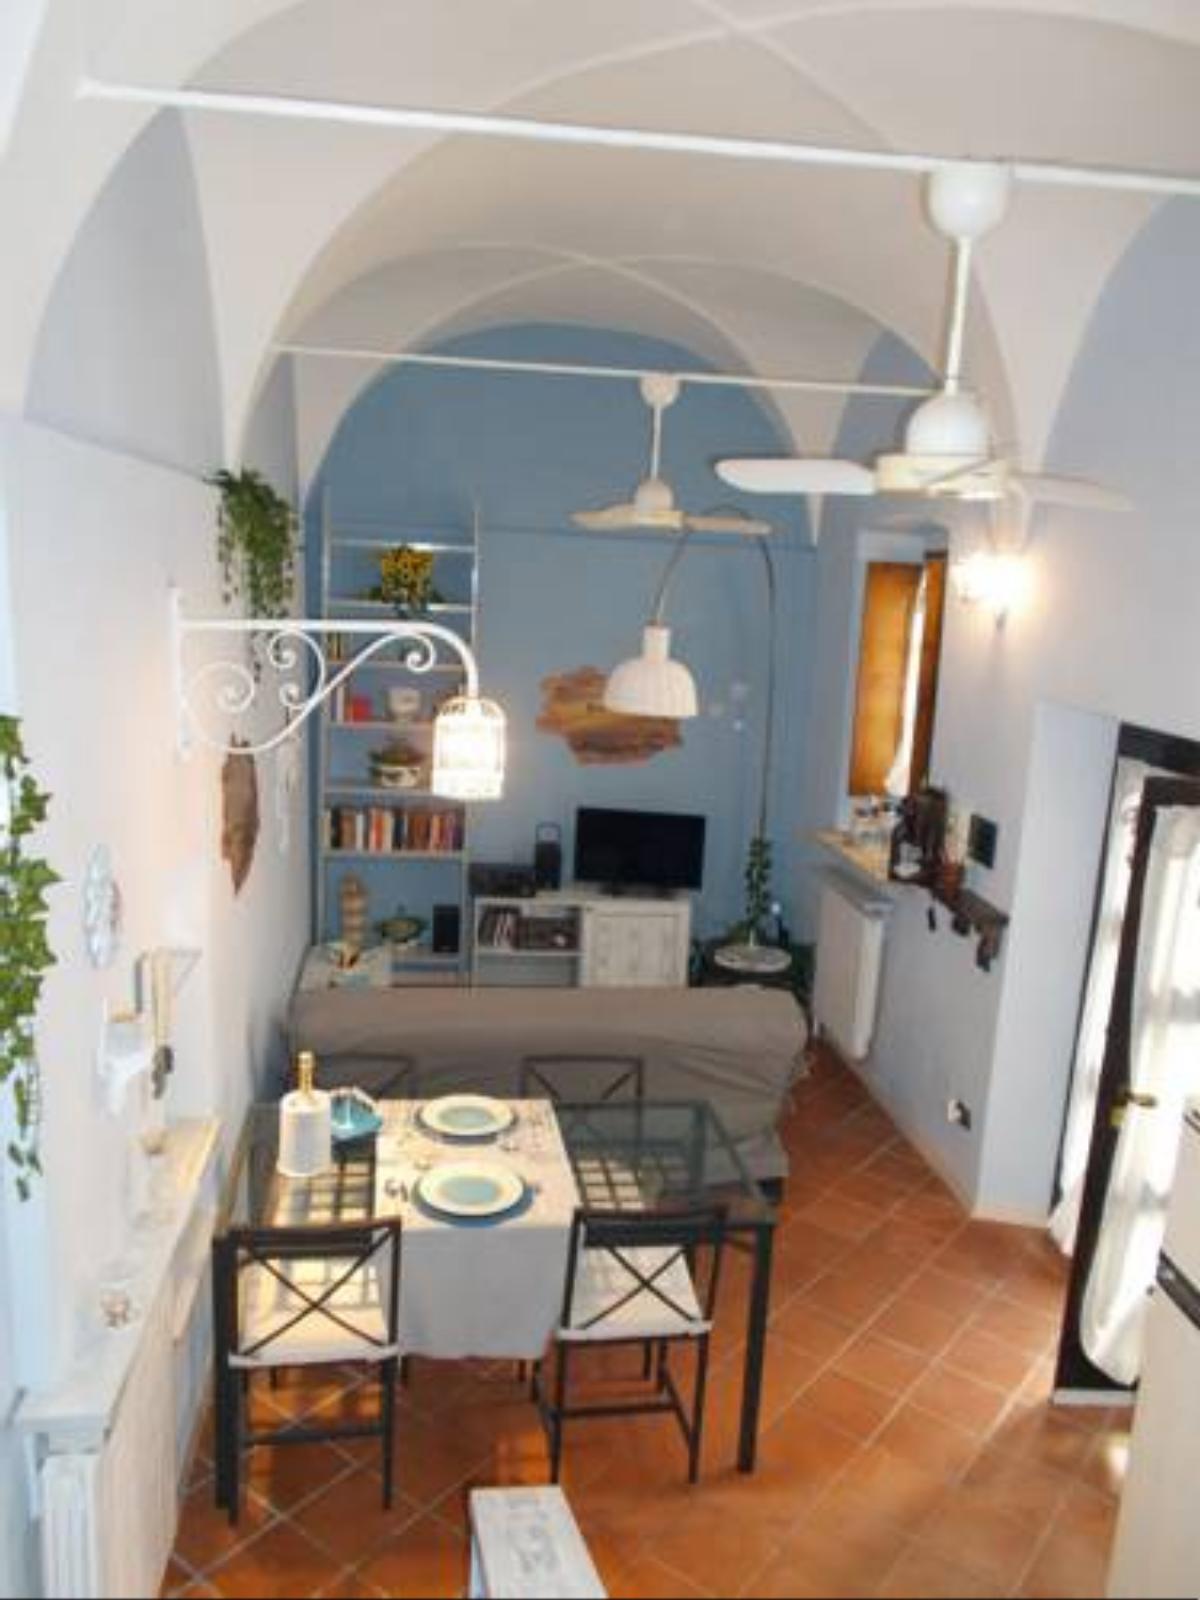 “La Loggia” Apartment Hotel Casale Monferrato Italy